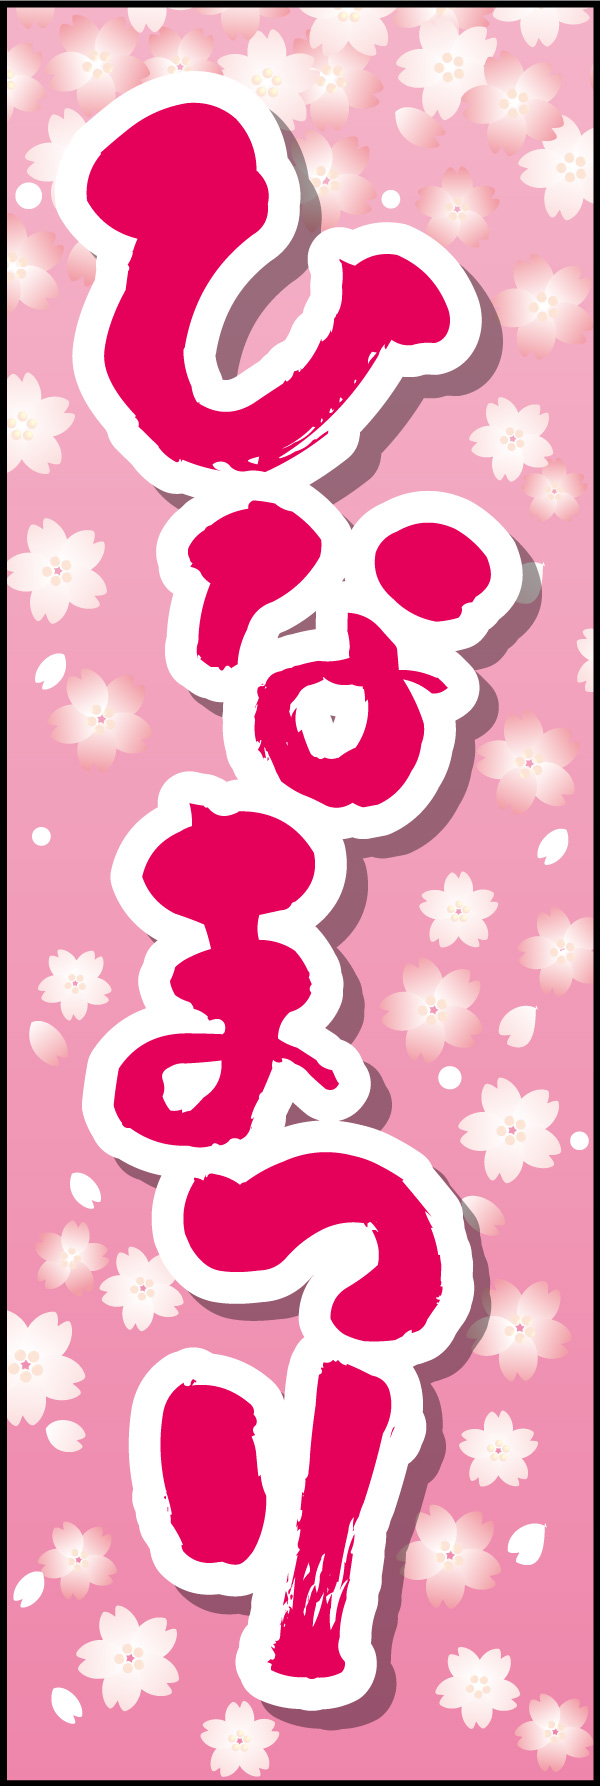 ひなまつり 06 「ひなまつり」ののぼりです。華やかなピンクと花柄にデザインしました。(Y.M)